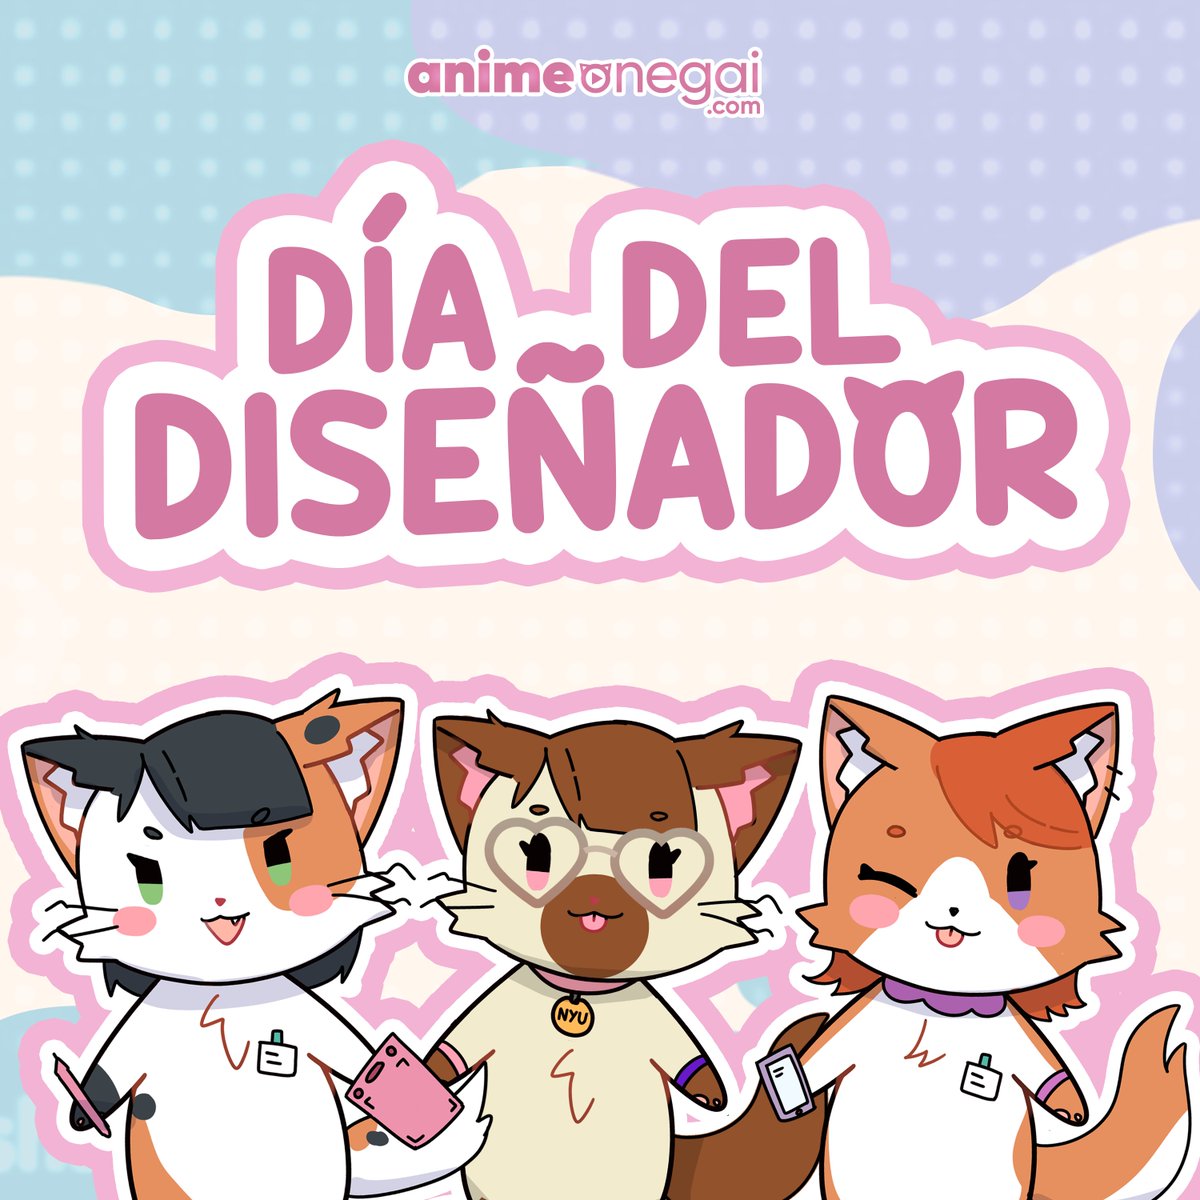 Sin ellas la magia audio visual de Anime Onegai no sería posible, por eso las celebramos con mucho cariño en su día a las gatitas diseñadoras. ¡NYAAA!
#comunidadonegai #diadeldiseñador #diseñadorgrafico #diseñografico #diseño #anime